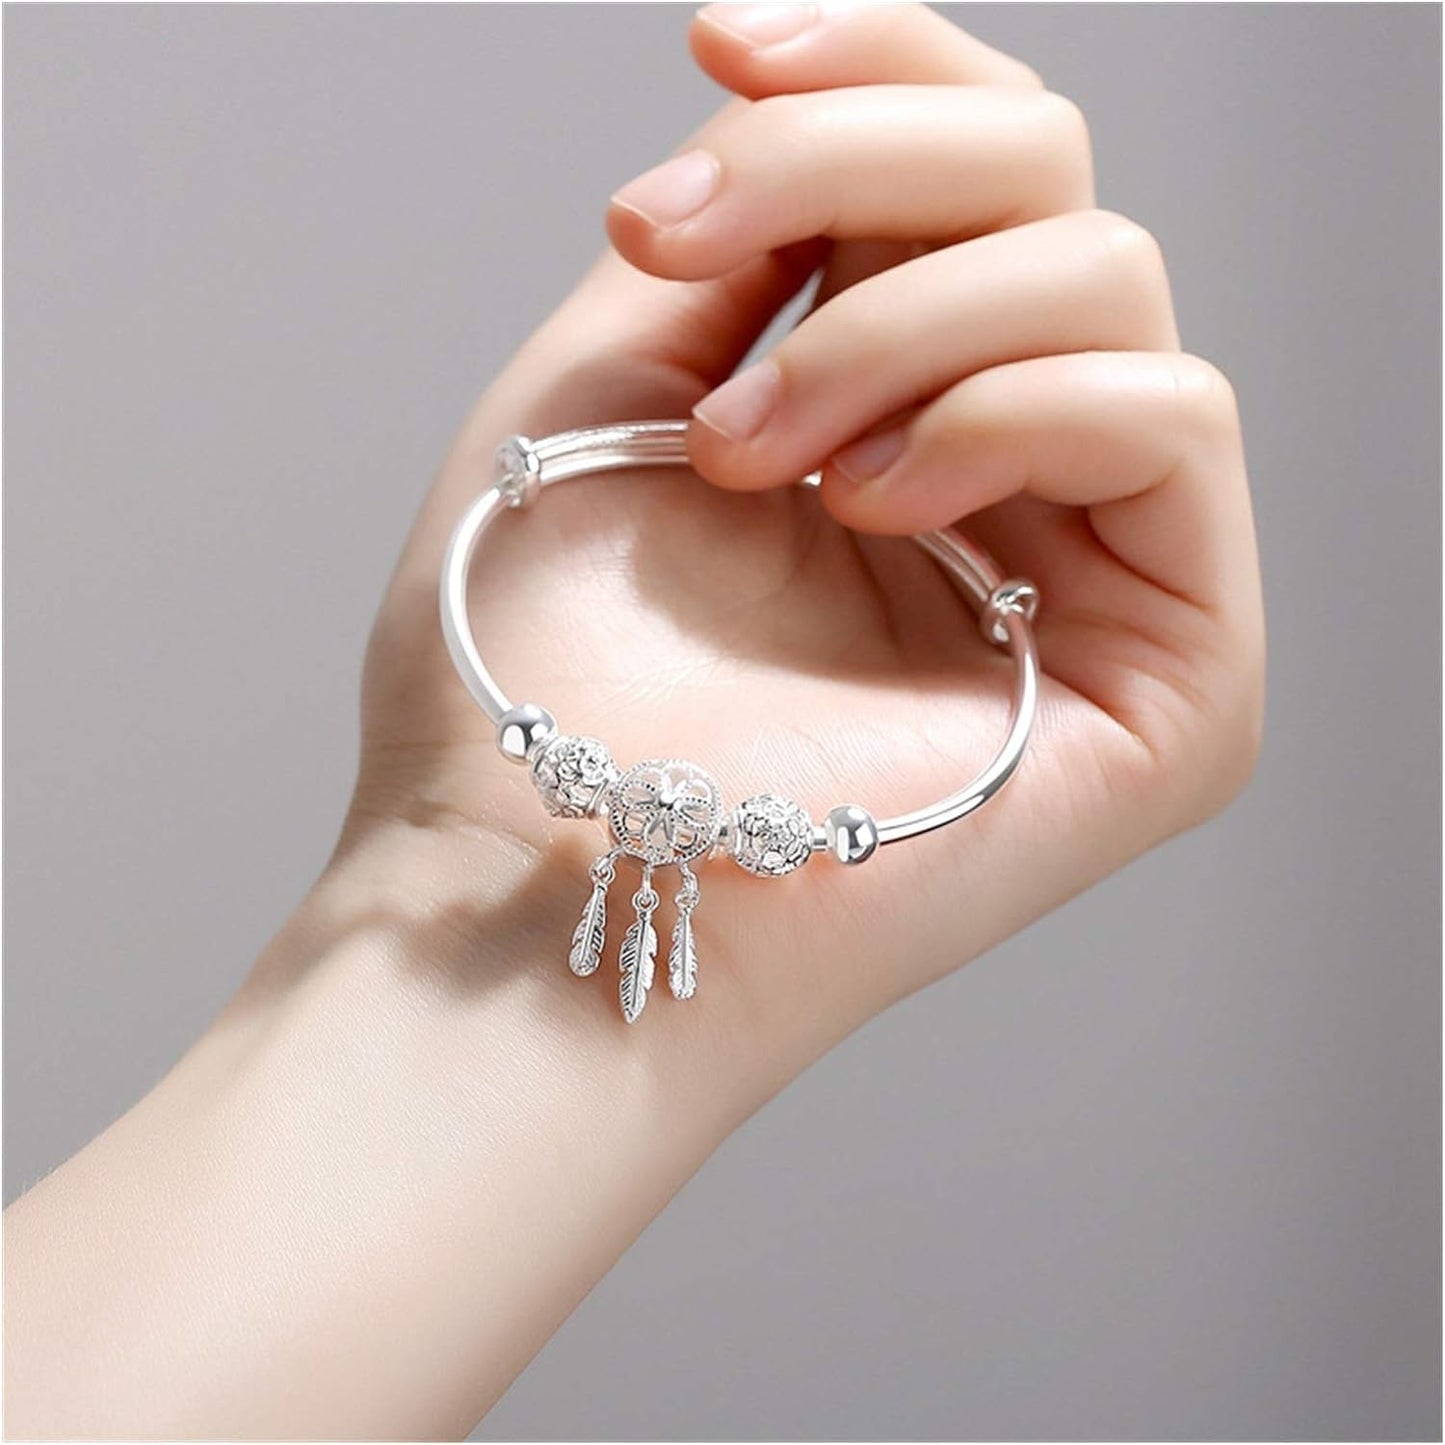 Jewelry | Dreamcatcher Bracelet Silver